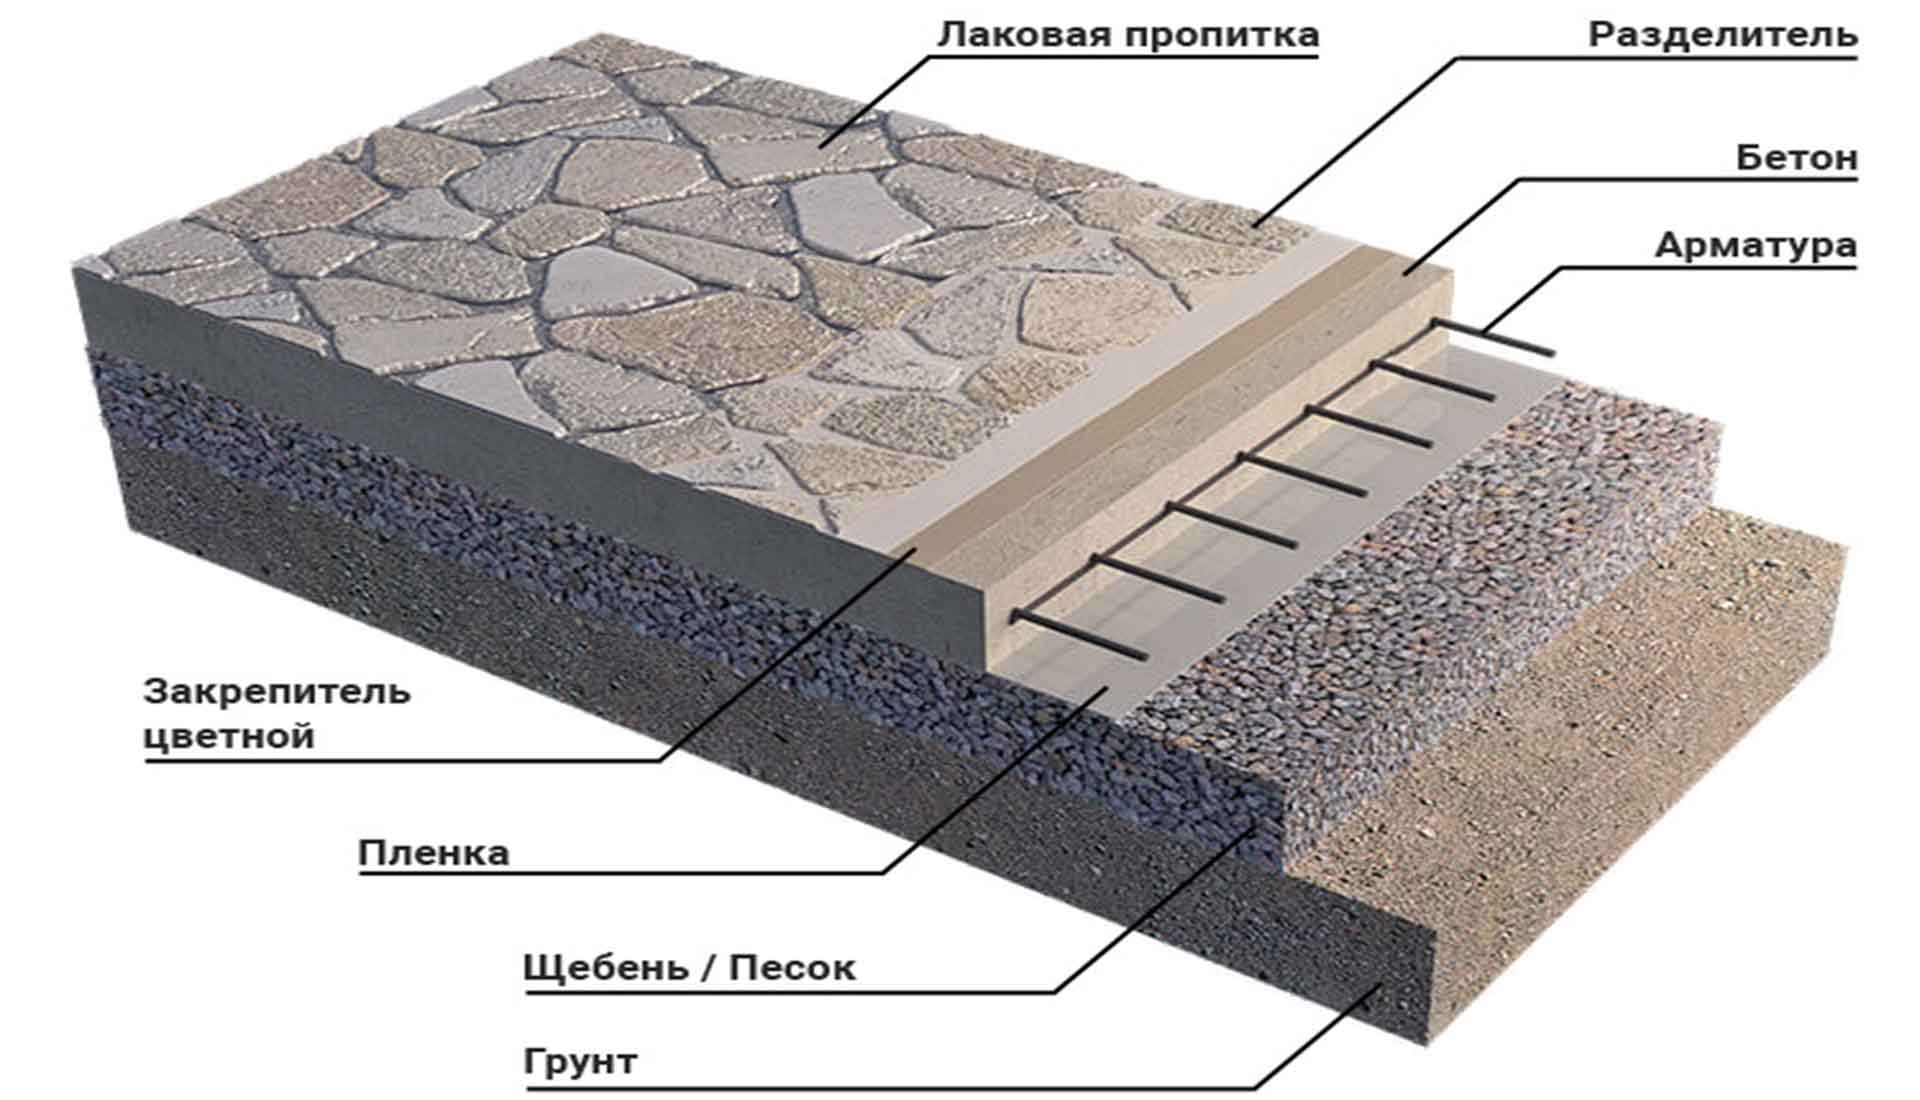 Артис - печатныйй бетон москва продажа материалов укладка все виды услуг из чего состоит